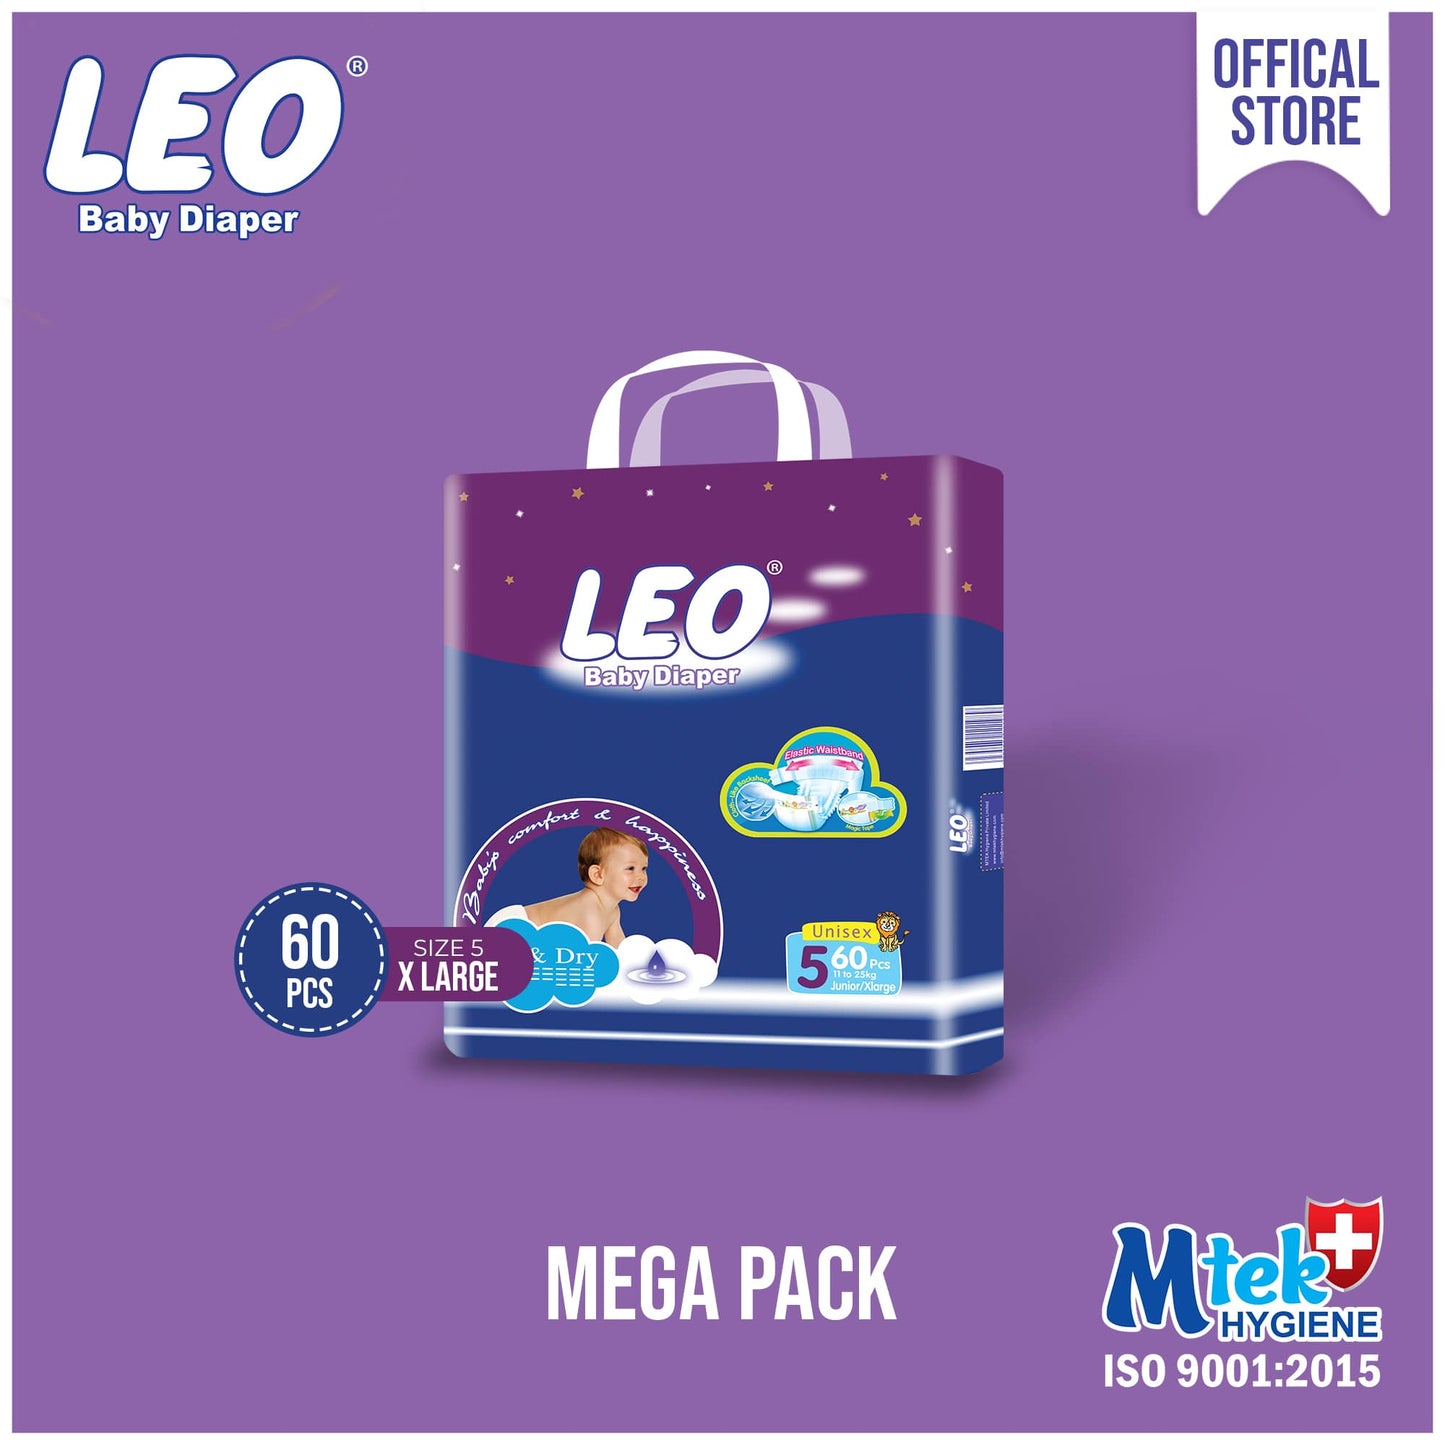 Leo Mega Pack Baby Diaper – Size 5, X-Large – 60 Pcs